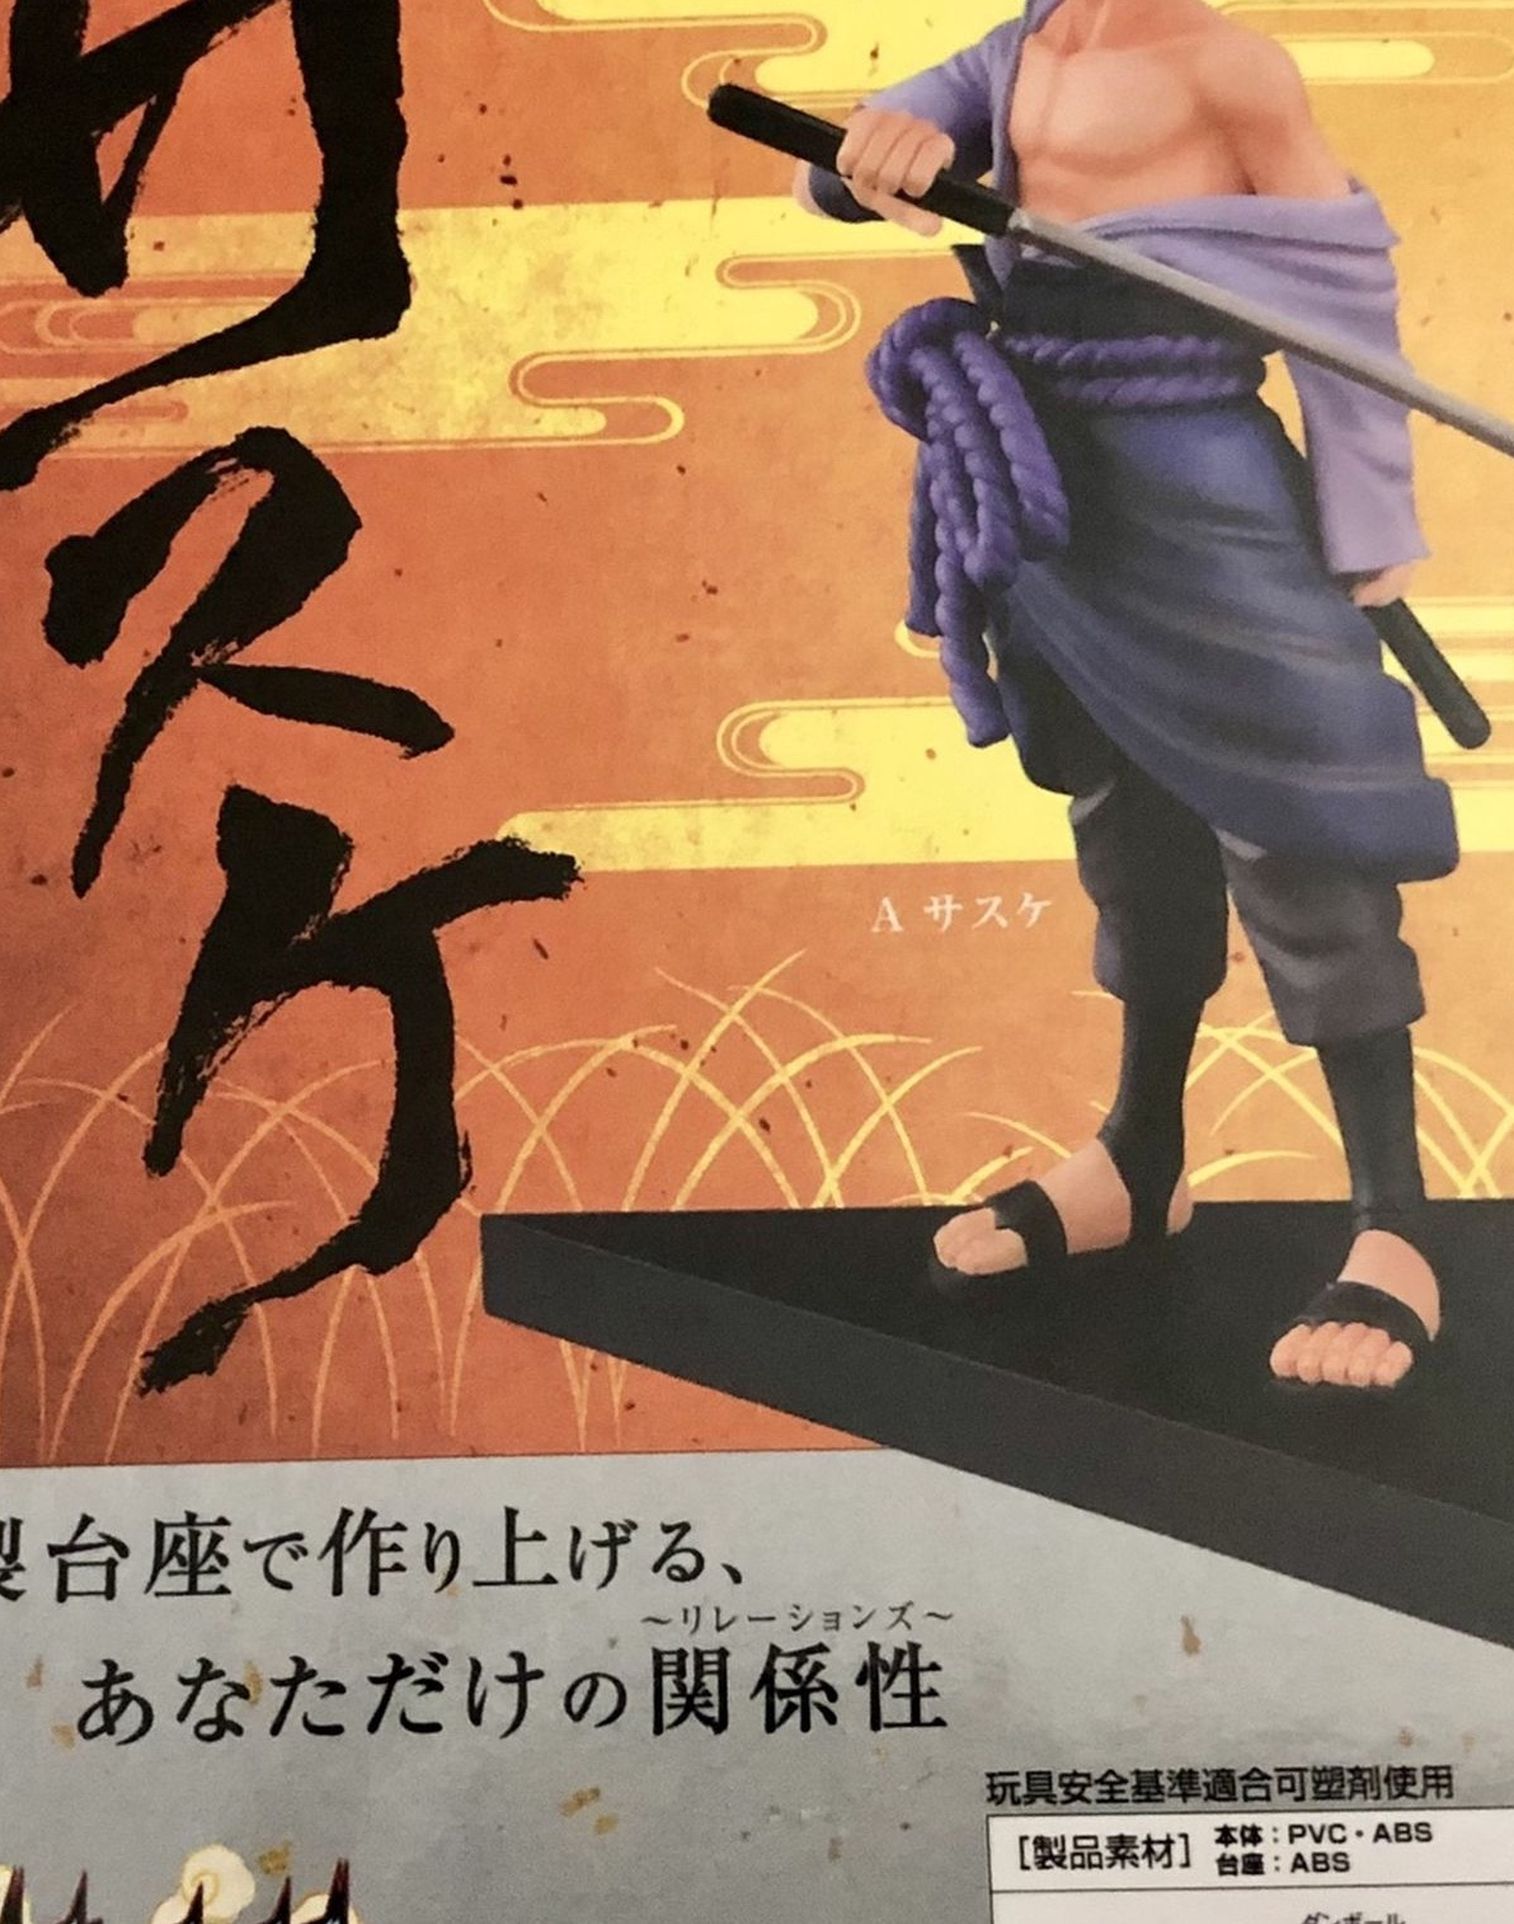 Naruto Shippuden Sasuke Shinobi Relations Figure